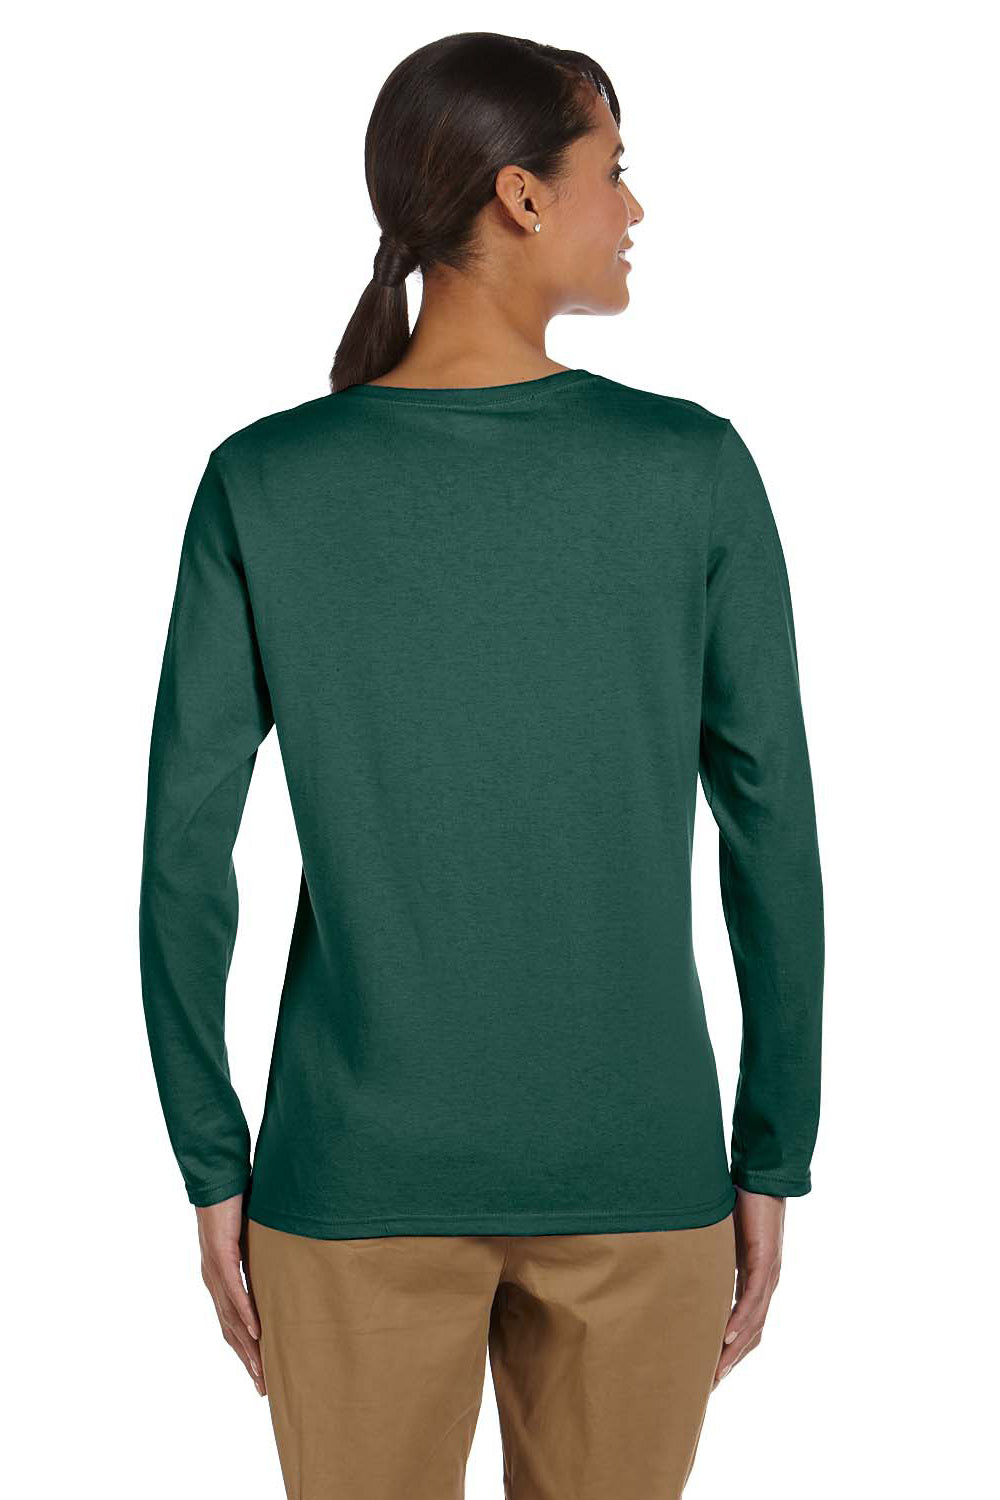 Gildan G540L Womens Long Sleeve Crewneck T-Shirt Forest Green Back